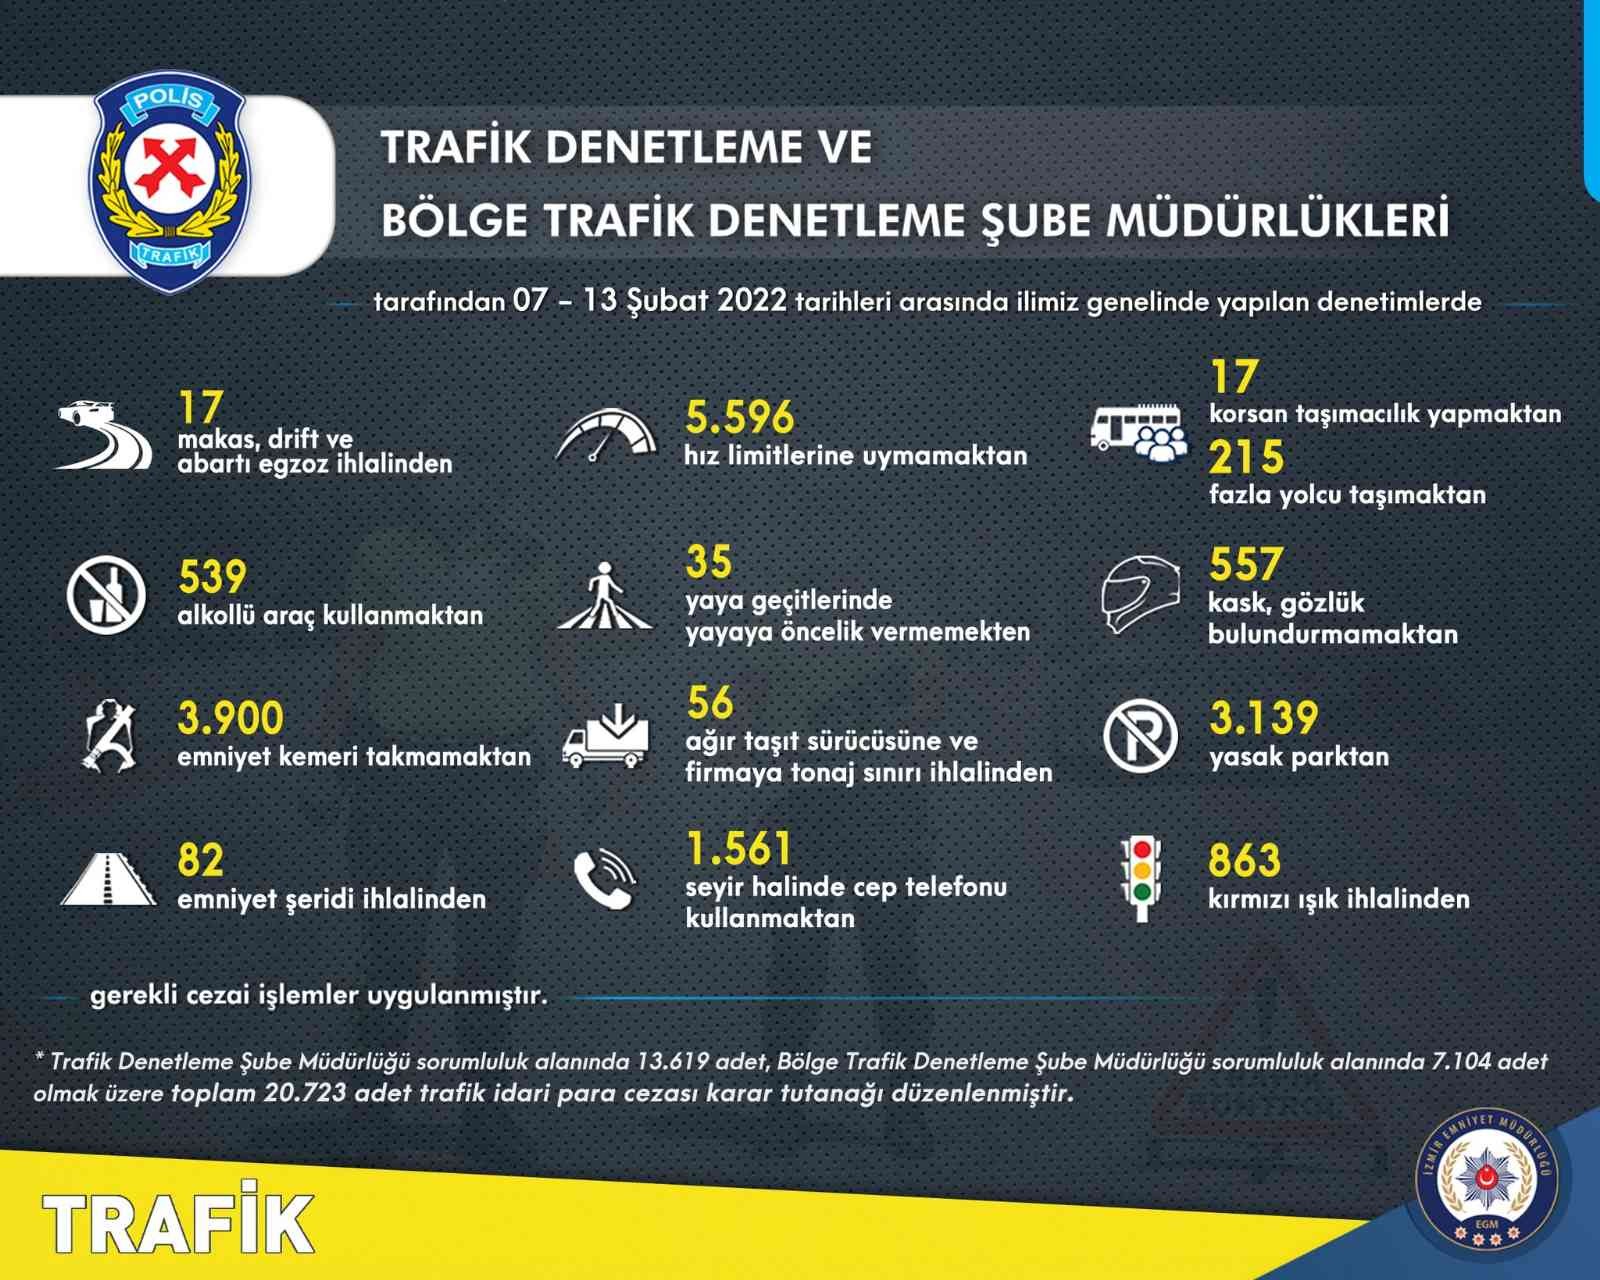 İzmir’de trafik kurallarına uymayan 16 bin 577 sürücüye ceza #izmir